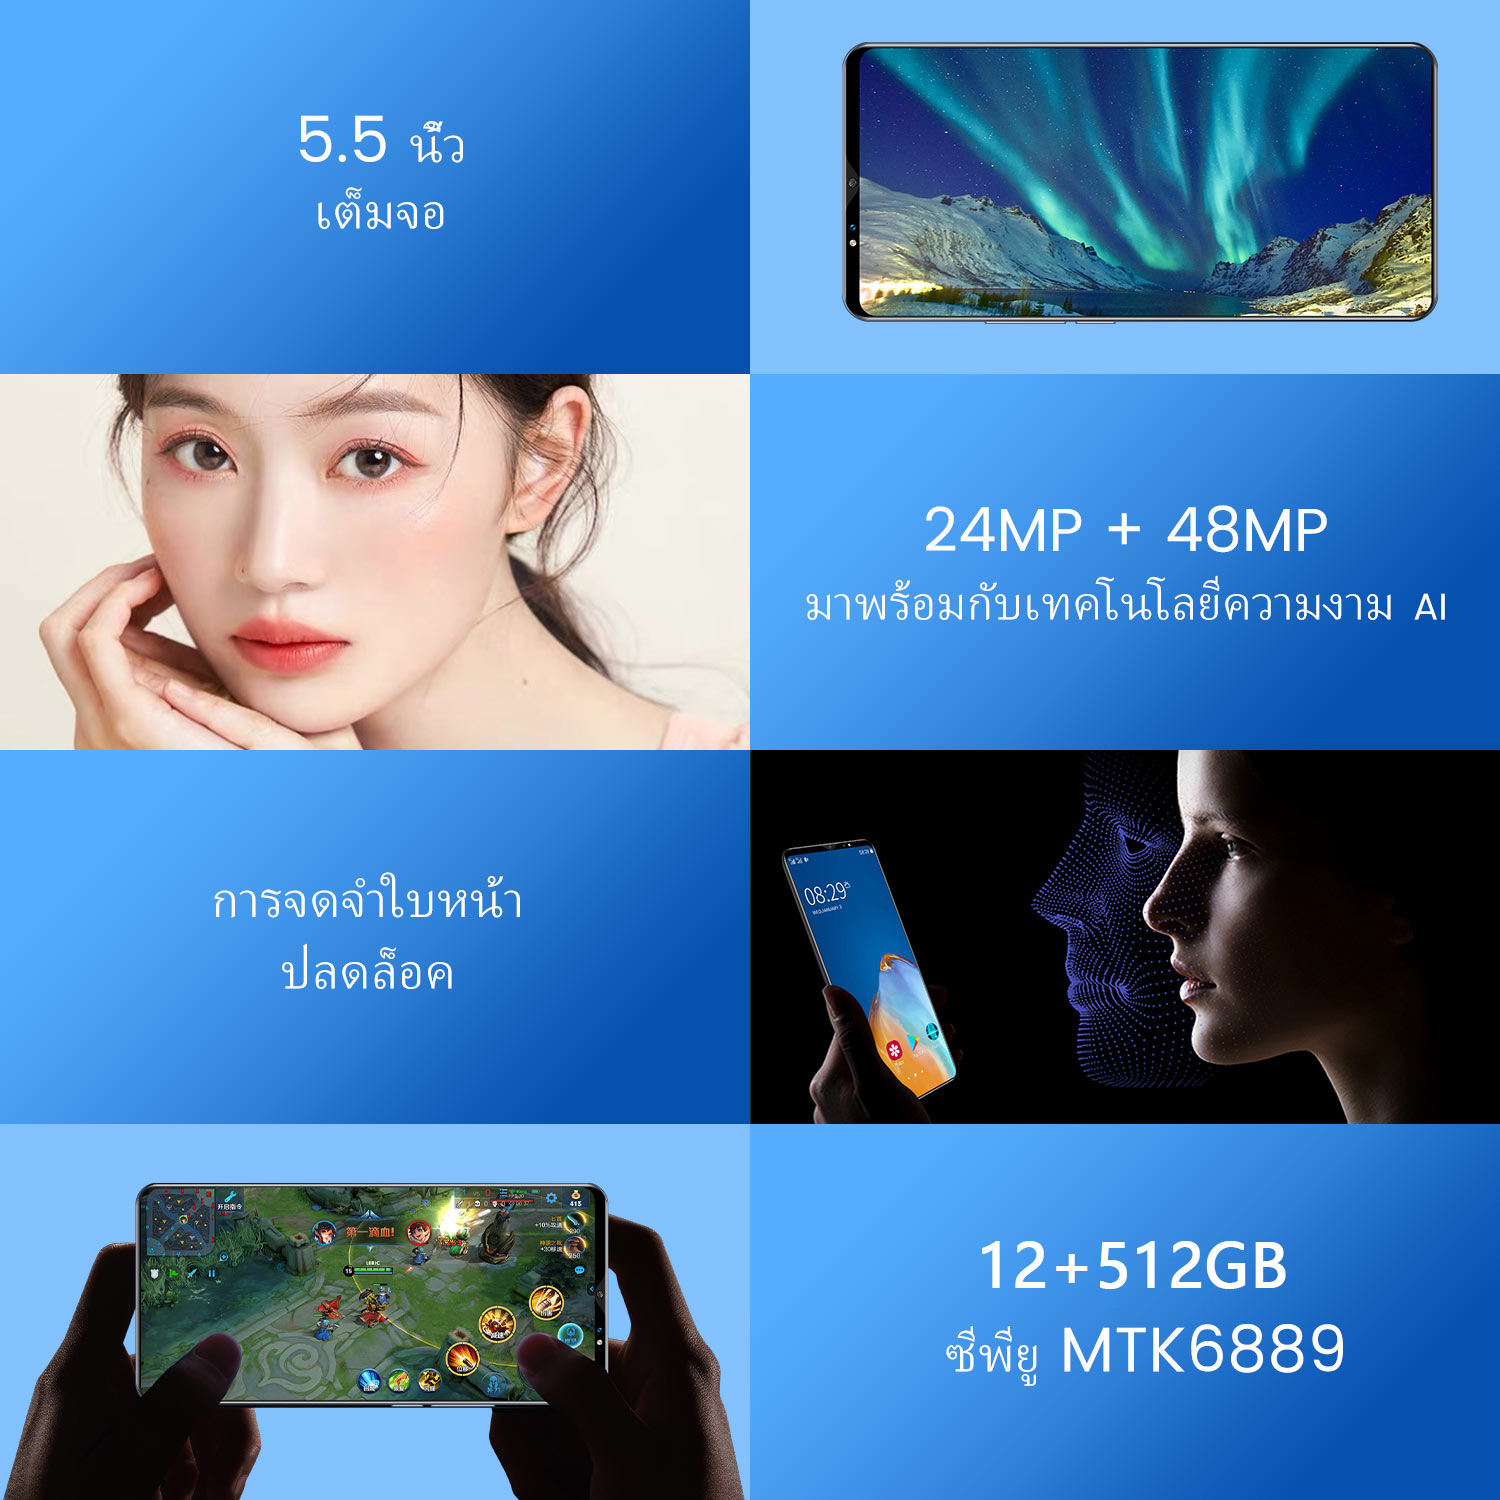 รายละเอียดเพิ่มเติมเกี่ยวกับ [รับประกันศูนย์ไทย 1 ปี] Sansumg Galavy S20 FE 5G 12+512 GB โทรศัพท์มือถือ 6.5 นิ้ว Full HD 5000 mAh หลังคมชัดสูงสุด 48MP พร้อมชาร์จเร็ว 33W มือถือราคาพิเศษ โทรศัพท์ ส่งฟรี